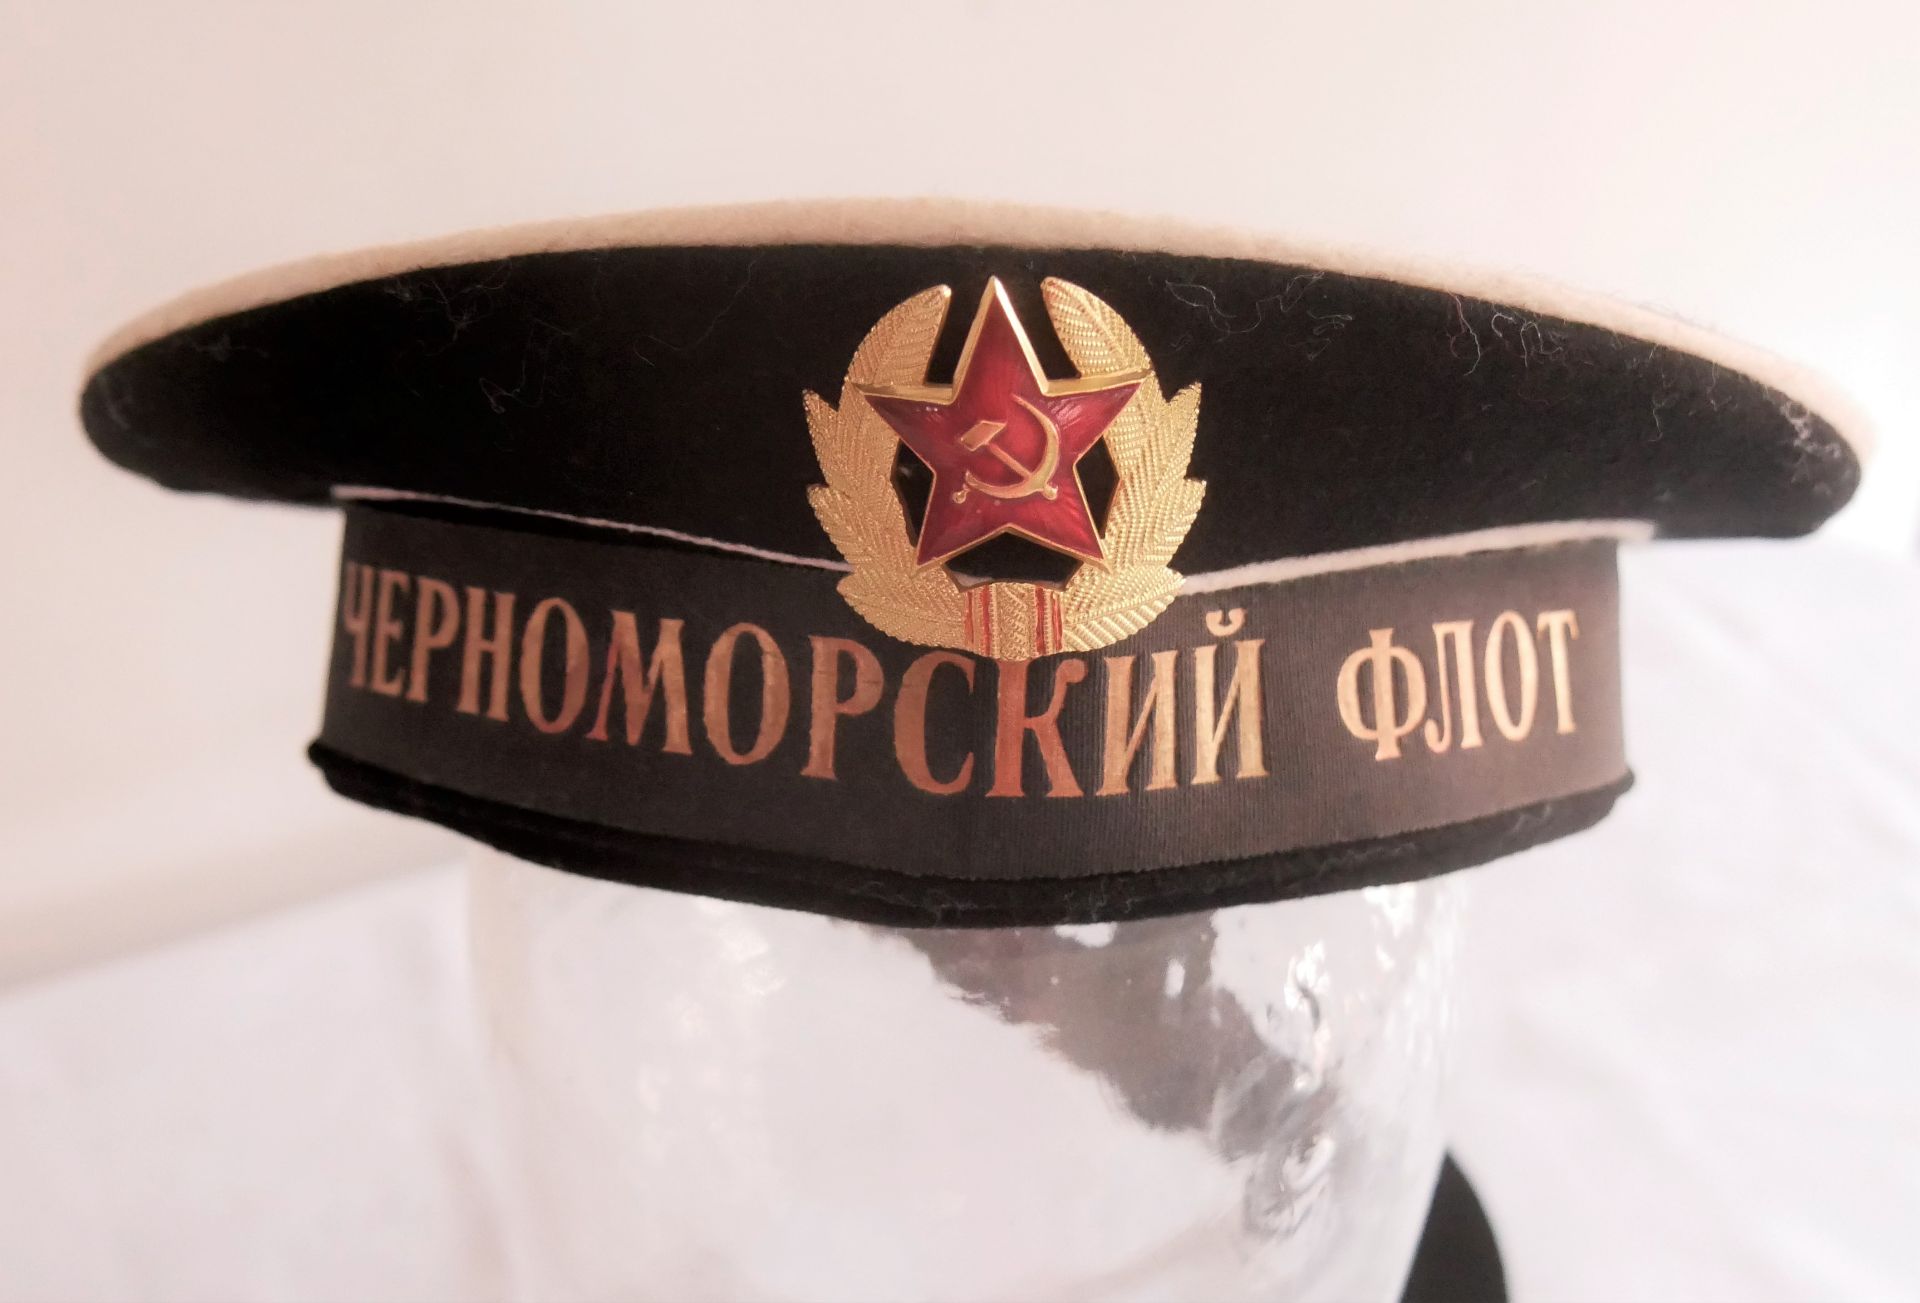 Russische Marinenmütze, Kokarde aus Metall. Guter getragener Zustand. - Bild 2 aus 2